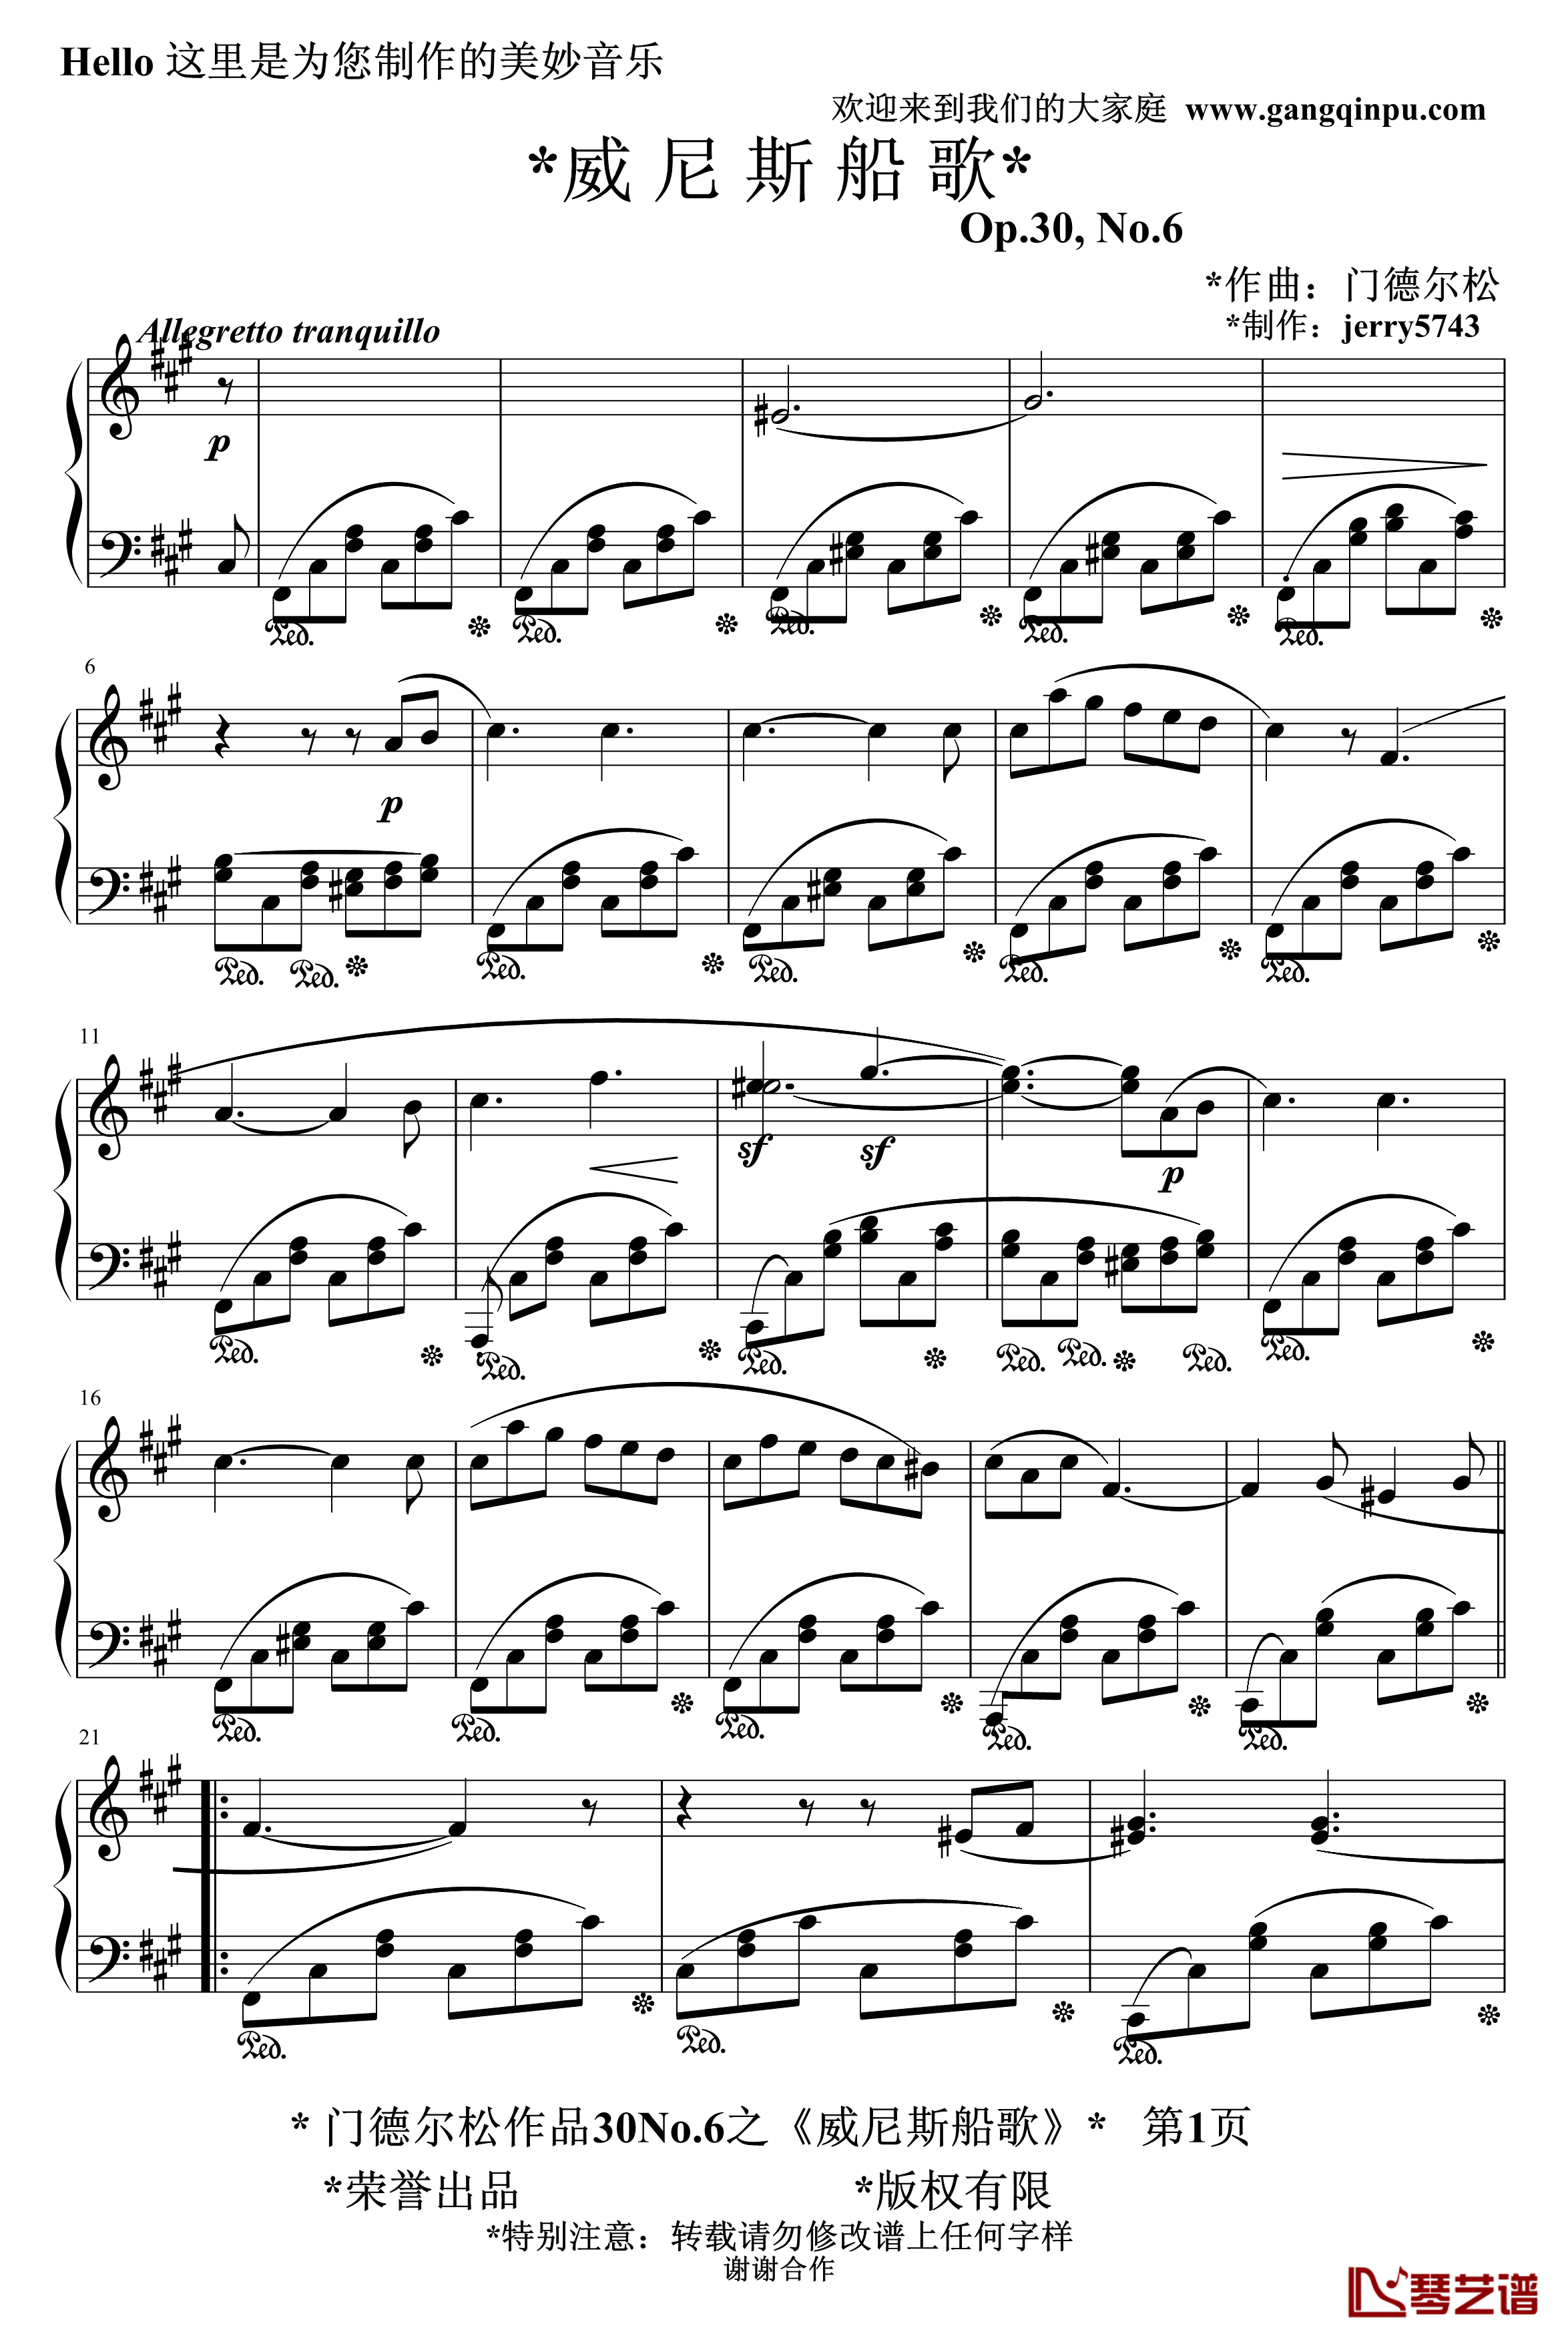 威尼斯船歌钢琴谱-精制-门德尔松1